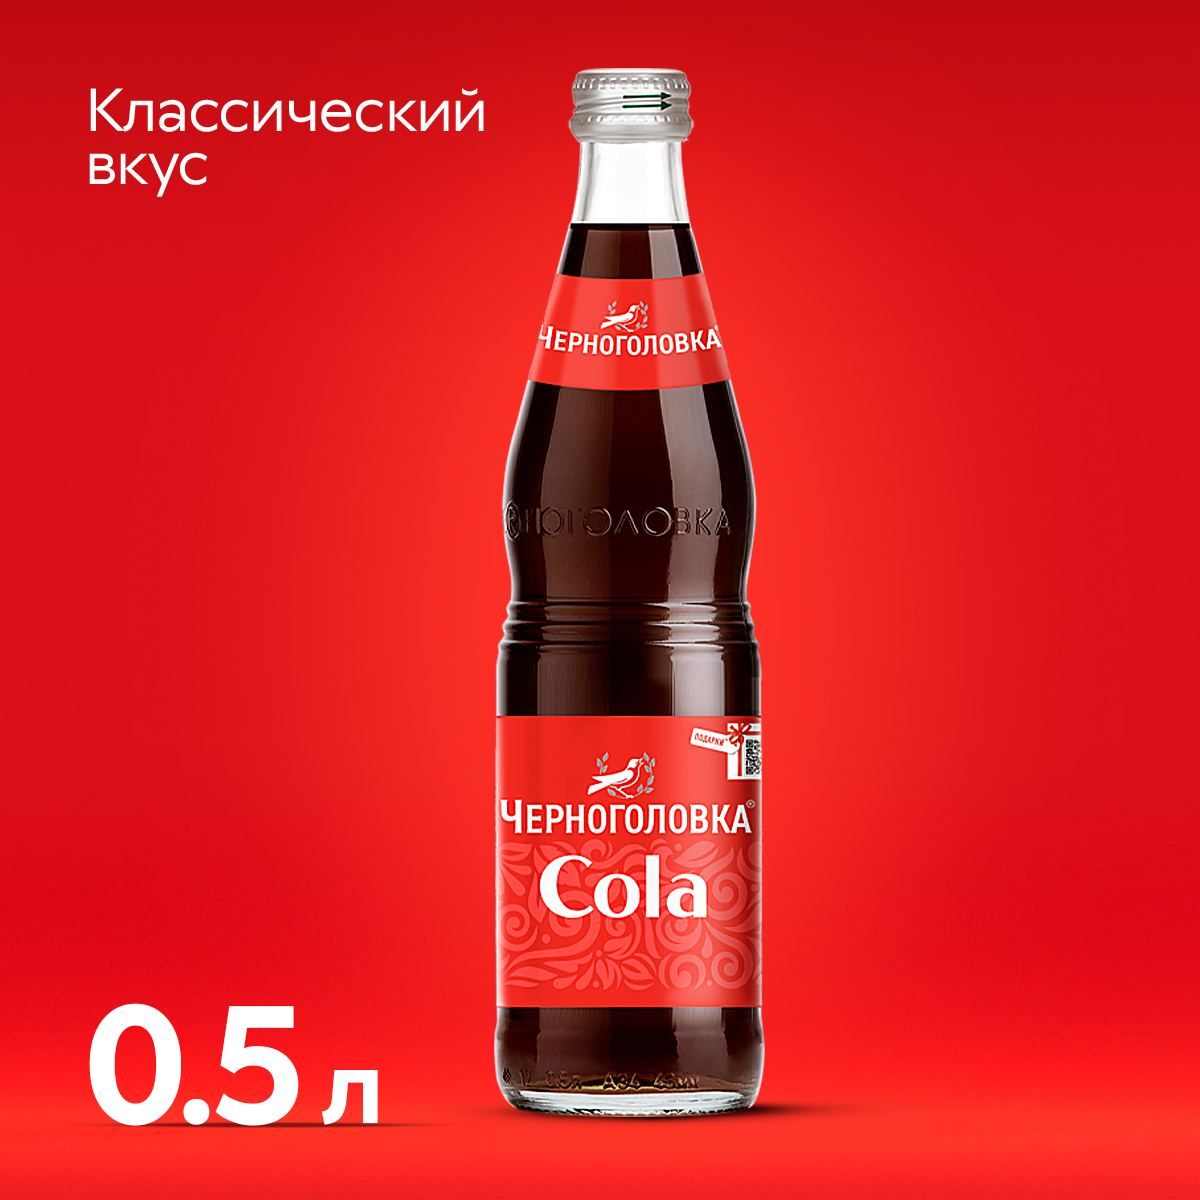 ЛимонадЧерноголовкаКолавстекляннойбутылке,0,5л